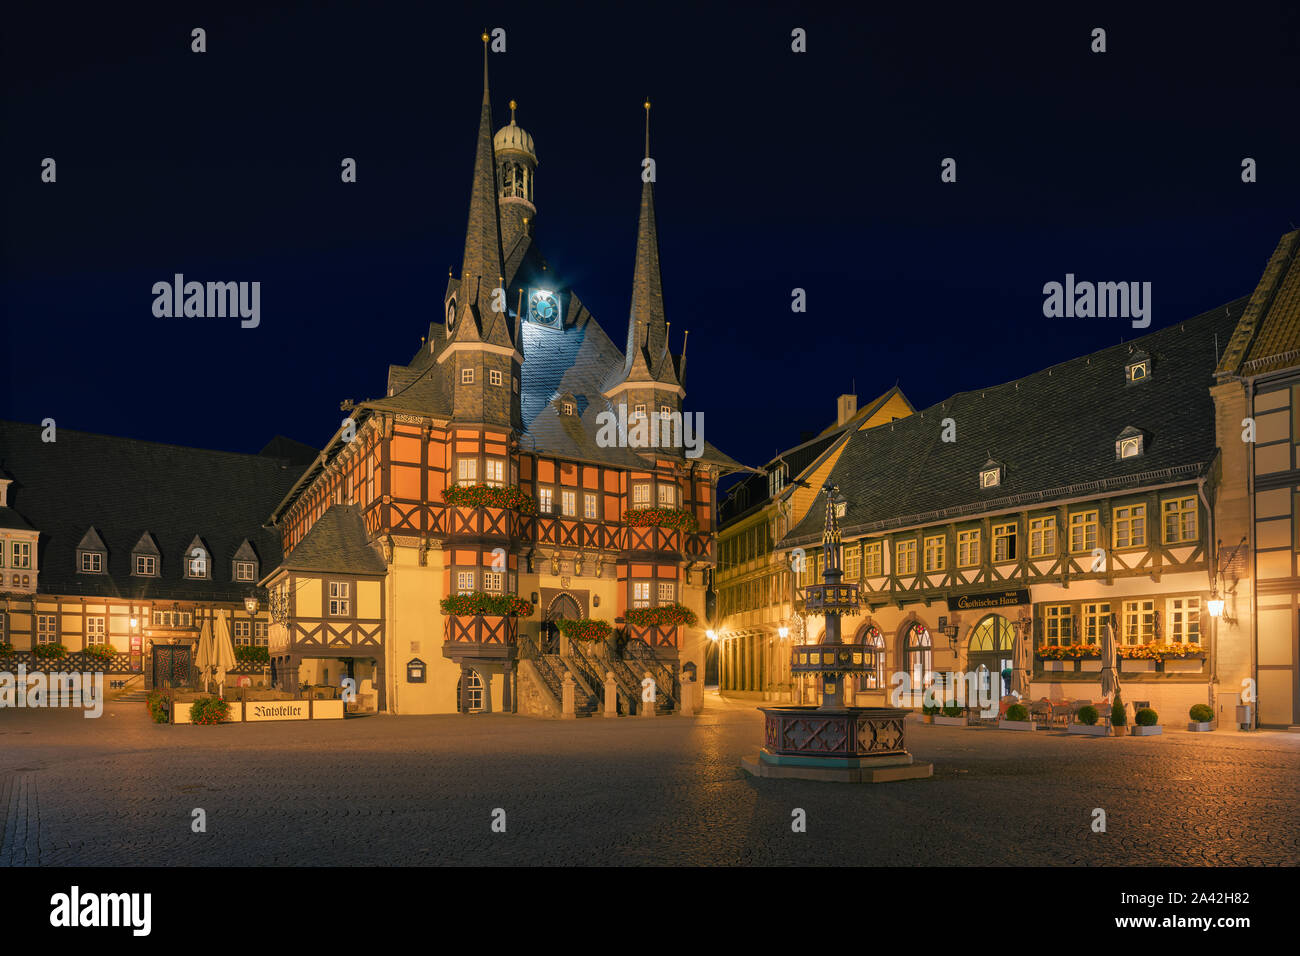 Das berühmte Rathaus in Wernigerode bei Sonnenaufgang. Wernigerode ist eine Stadt im Landkreis Harz, Sachsen-Anhalt, Deutschland. Wernigerode befindet sich southwe Stockfoto